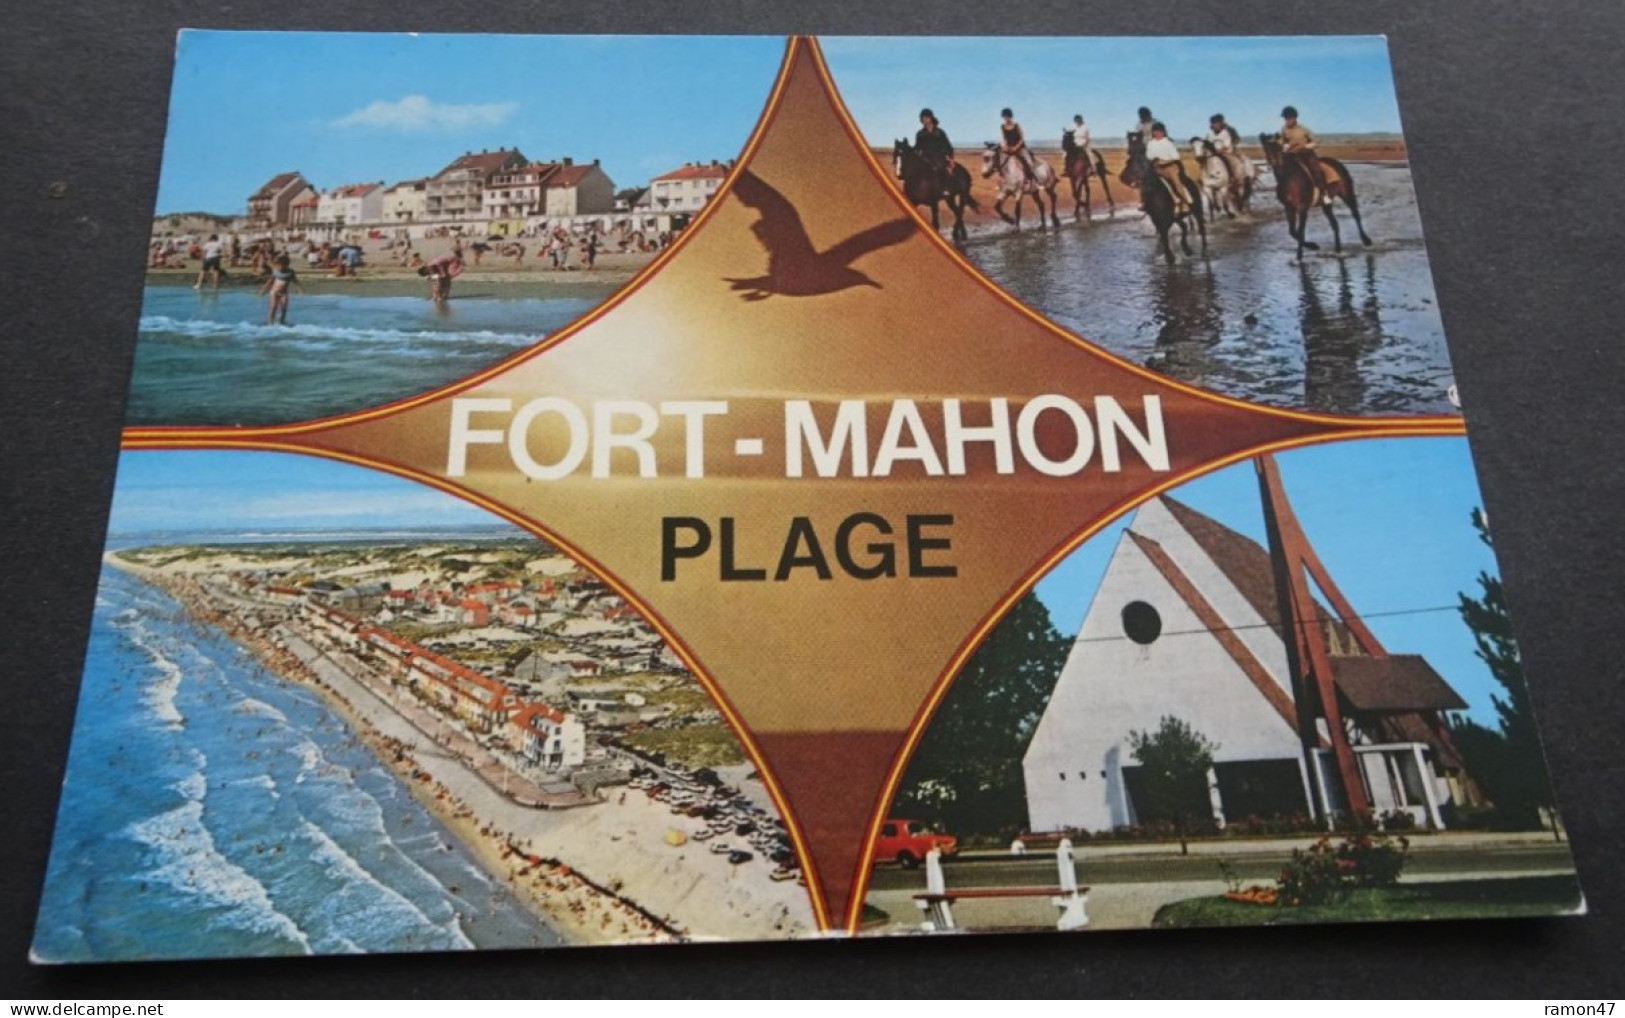 Fort-Mahon Plage - La Côte Opale - Artaud Frères, Editeurs, Carquefou - Abbeville